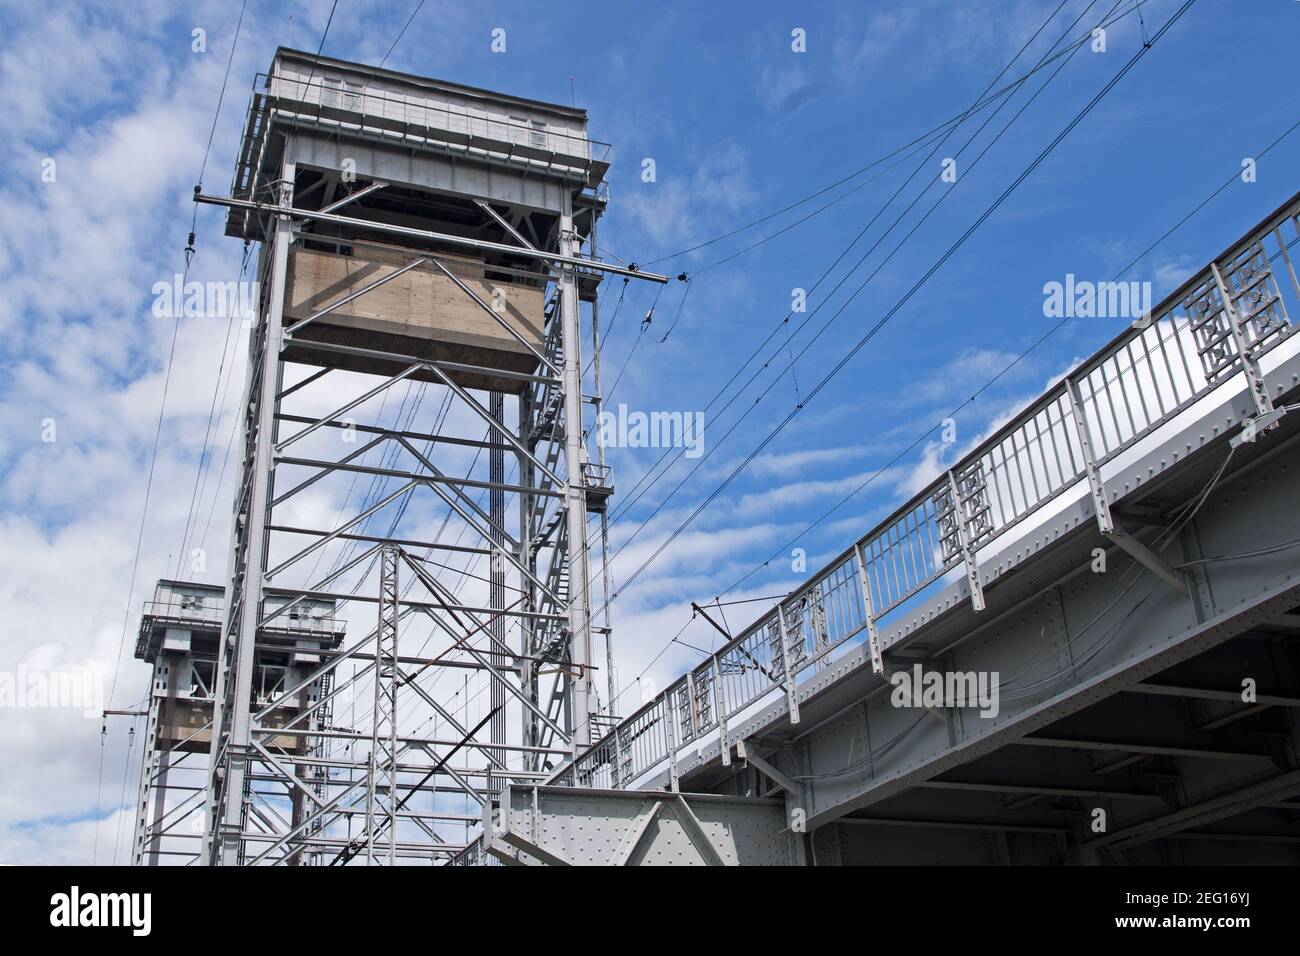 Construcción de metal blanco gris dos niveles de puente sobre el río, vista inferior de la segunda planta con vías de ferrocarril y dos pilares en forma de t Foto de stock